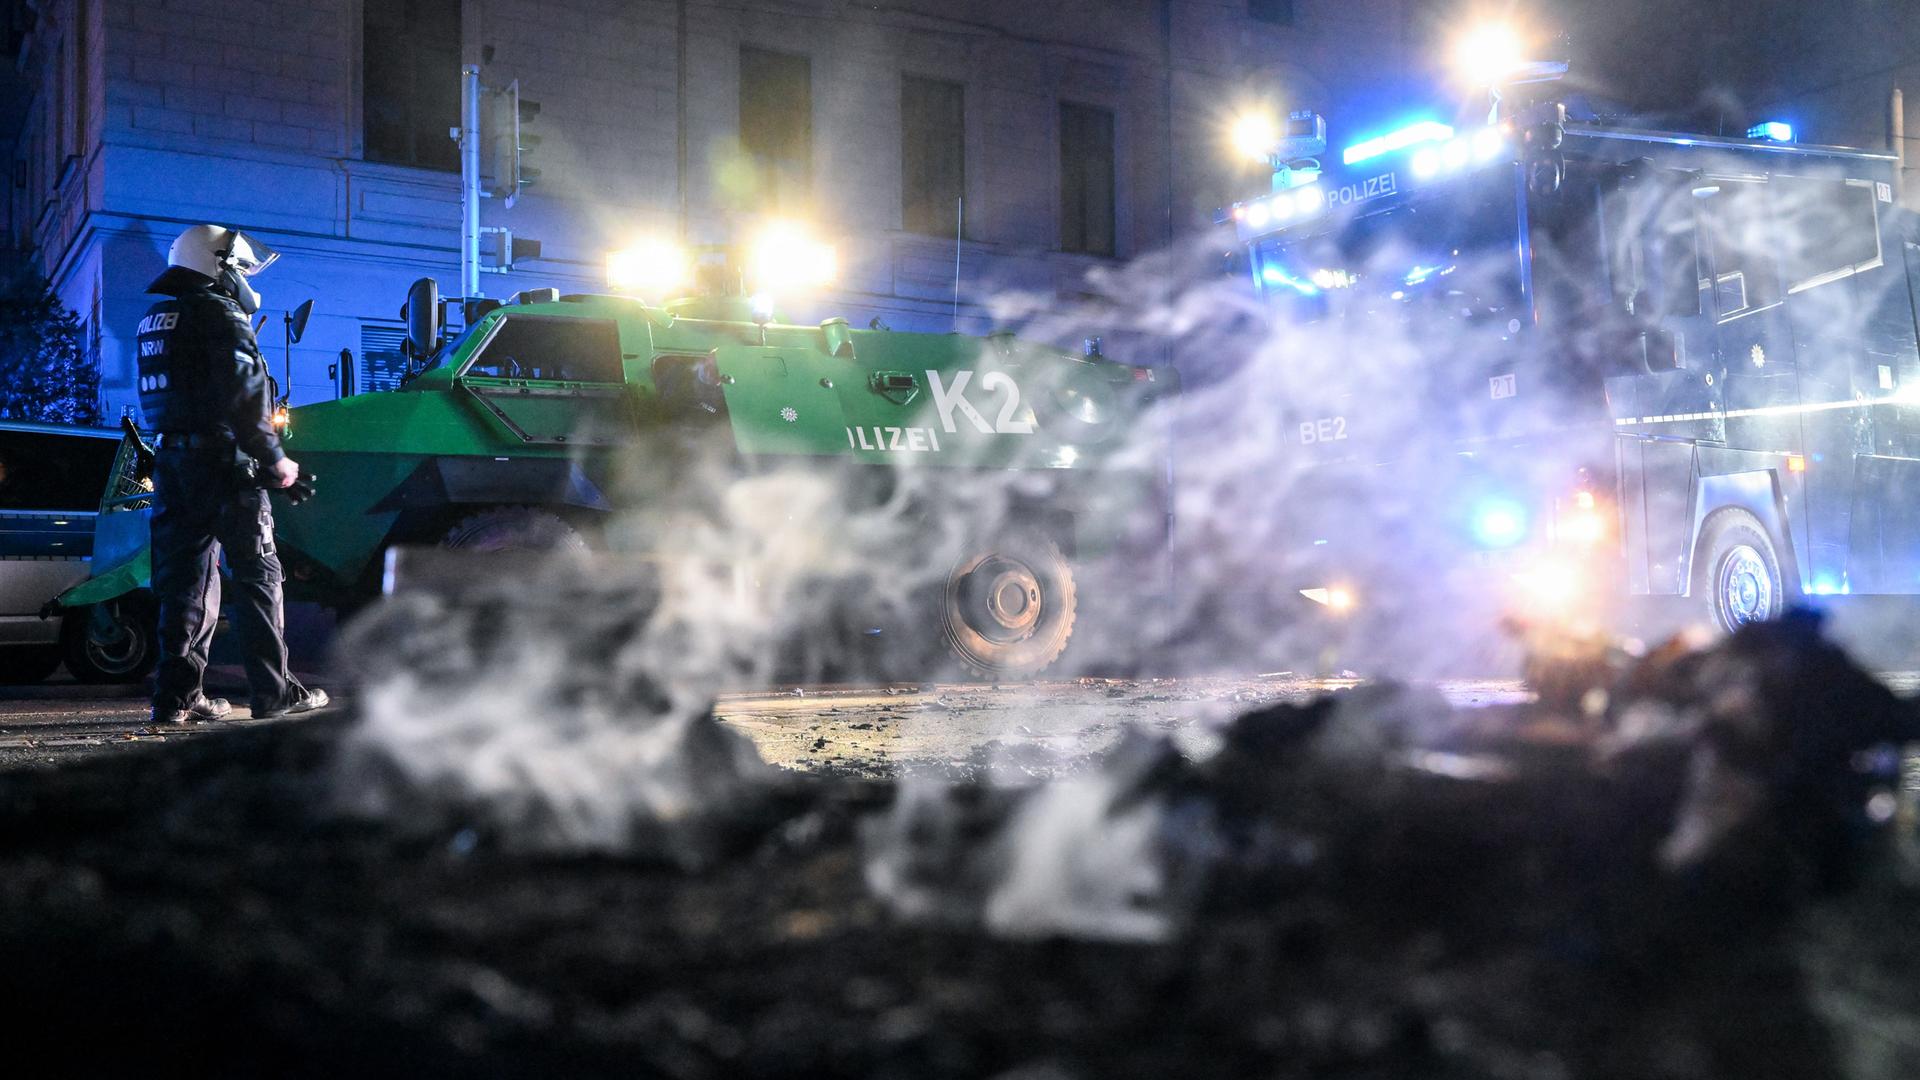 Polizisten in Leipzig stehen hinter einer rauchenden Barrikade im Stadtteil Connewitz, die zuvor gelöscht wurde.